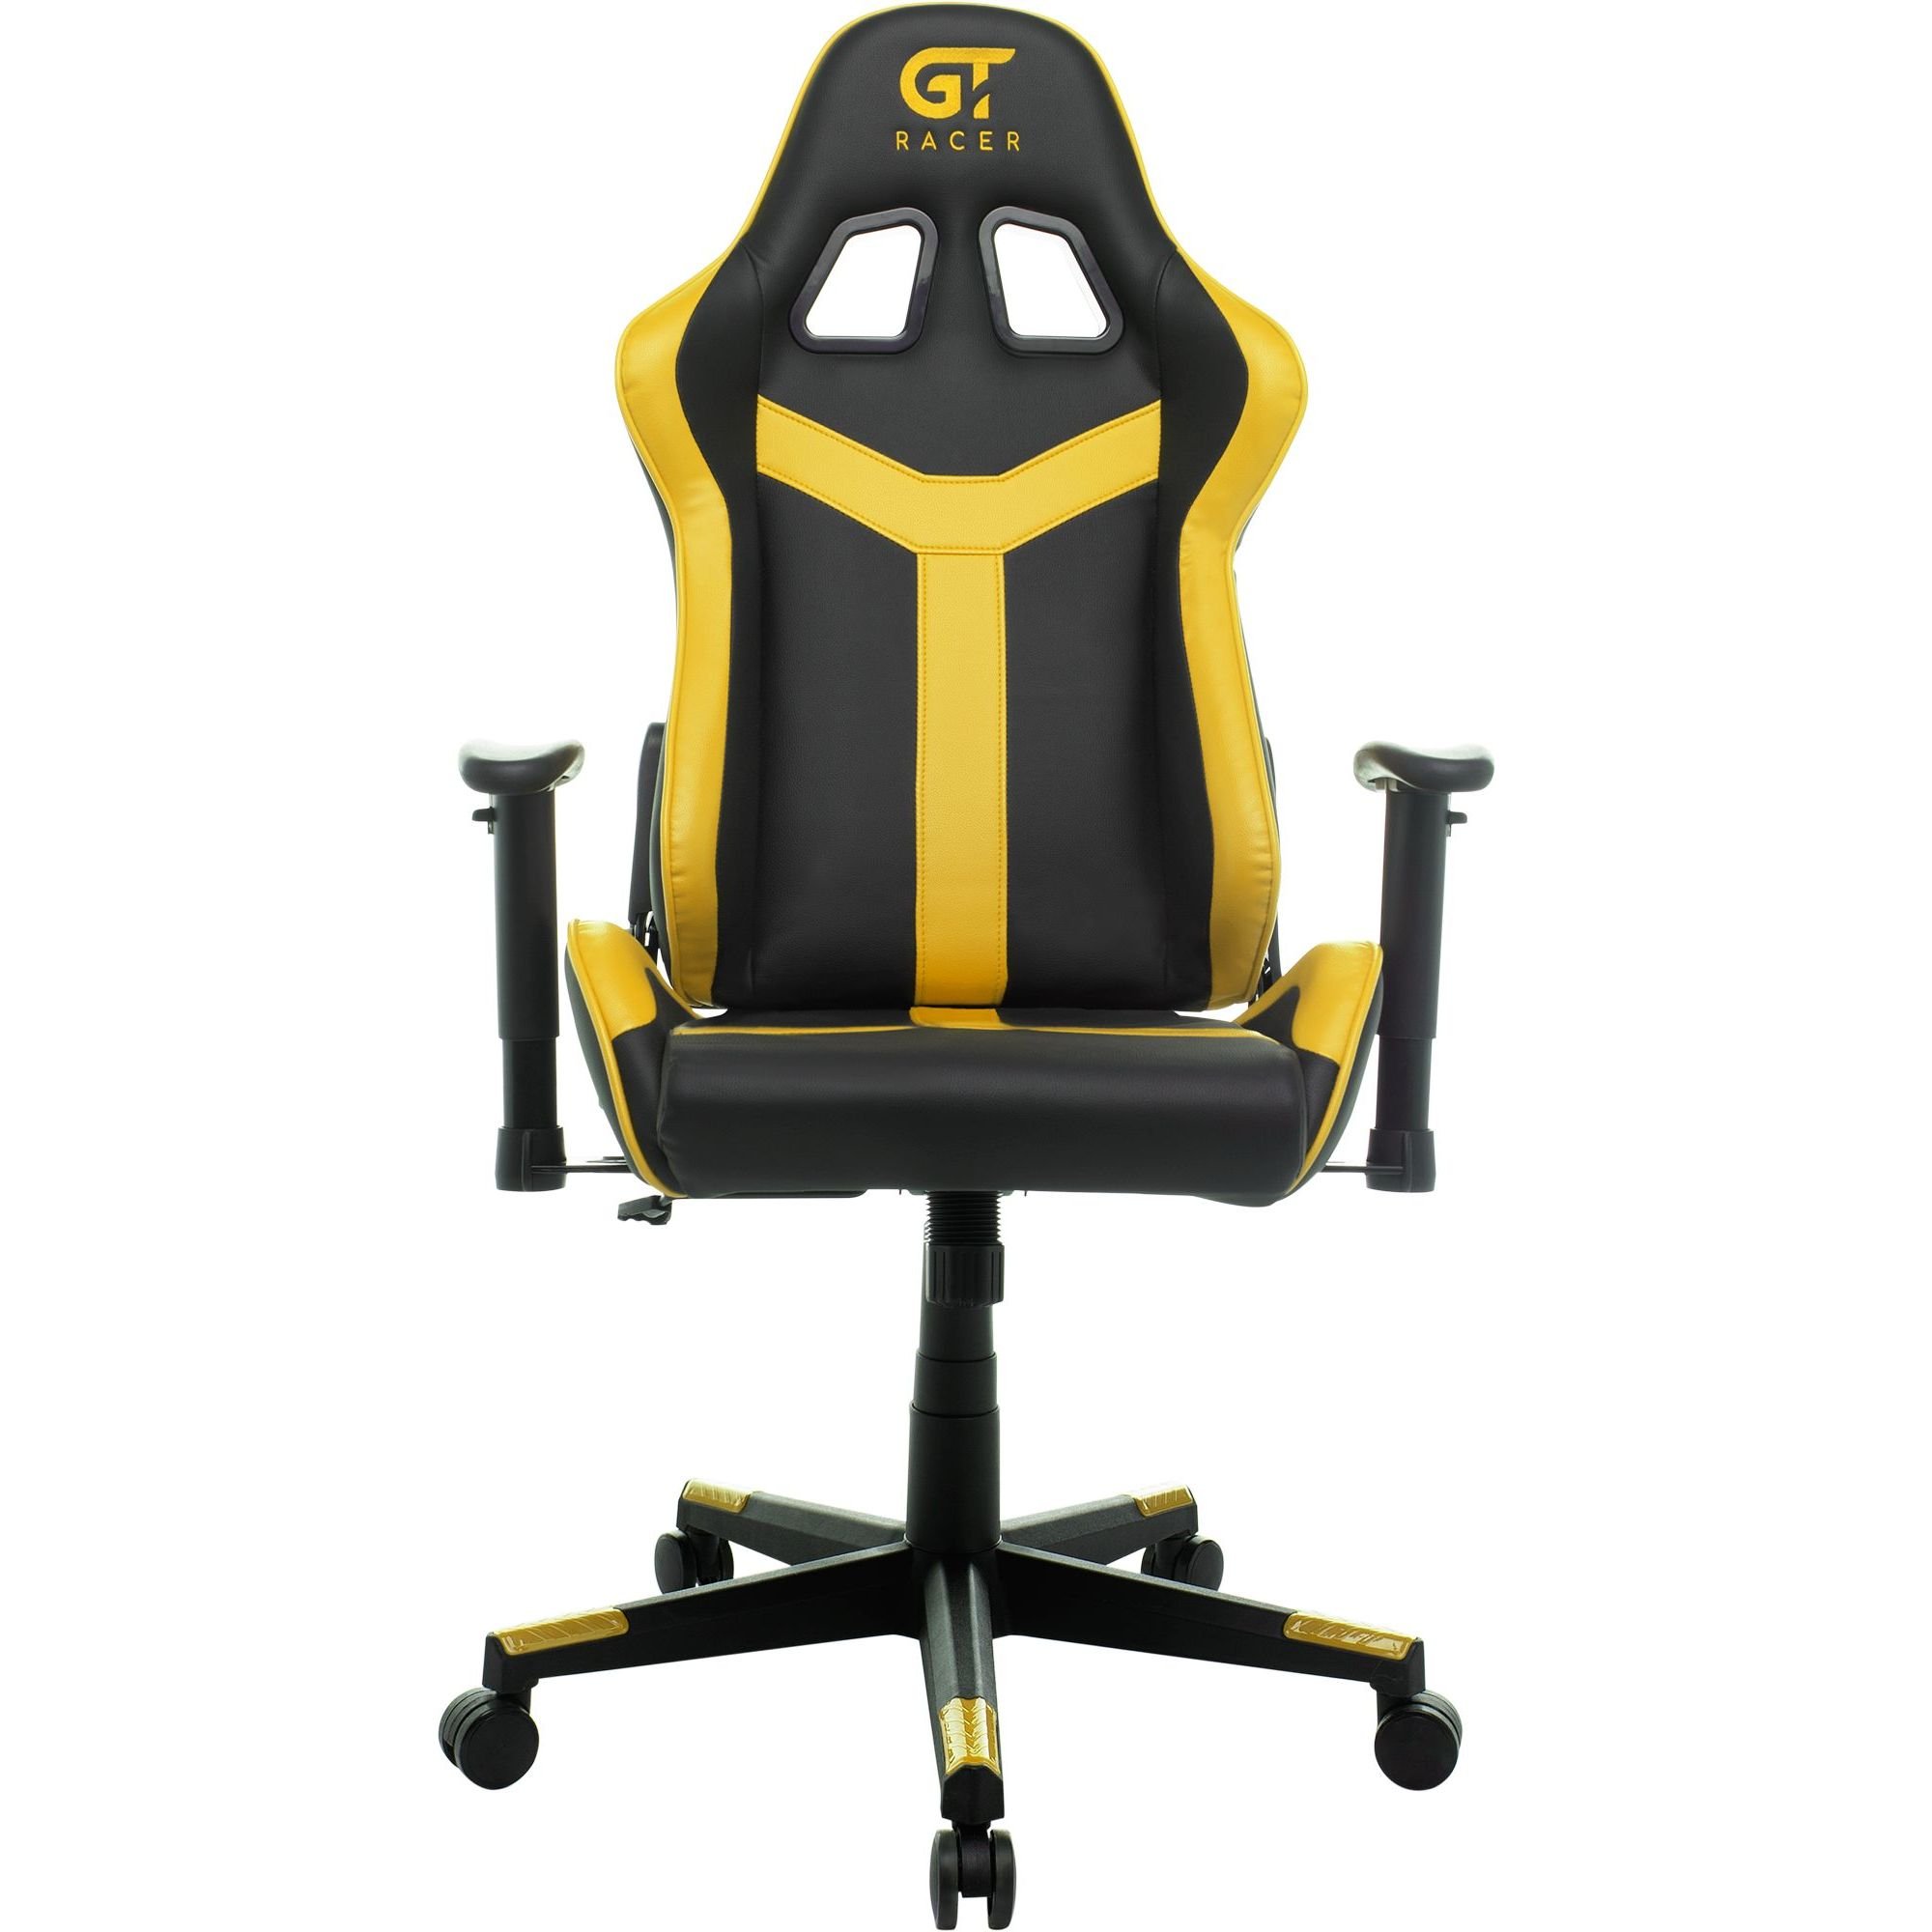 Геймерское кресло GT Racer черное с желтым (X-2527 Black/Yellow) - фото 1